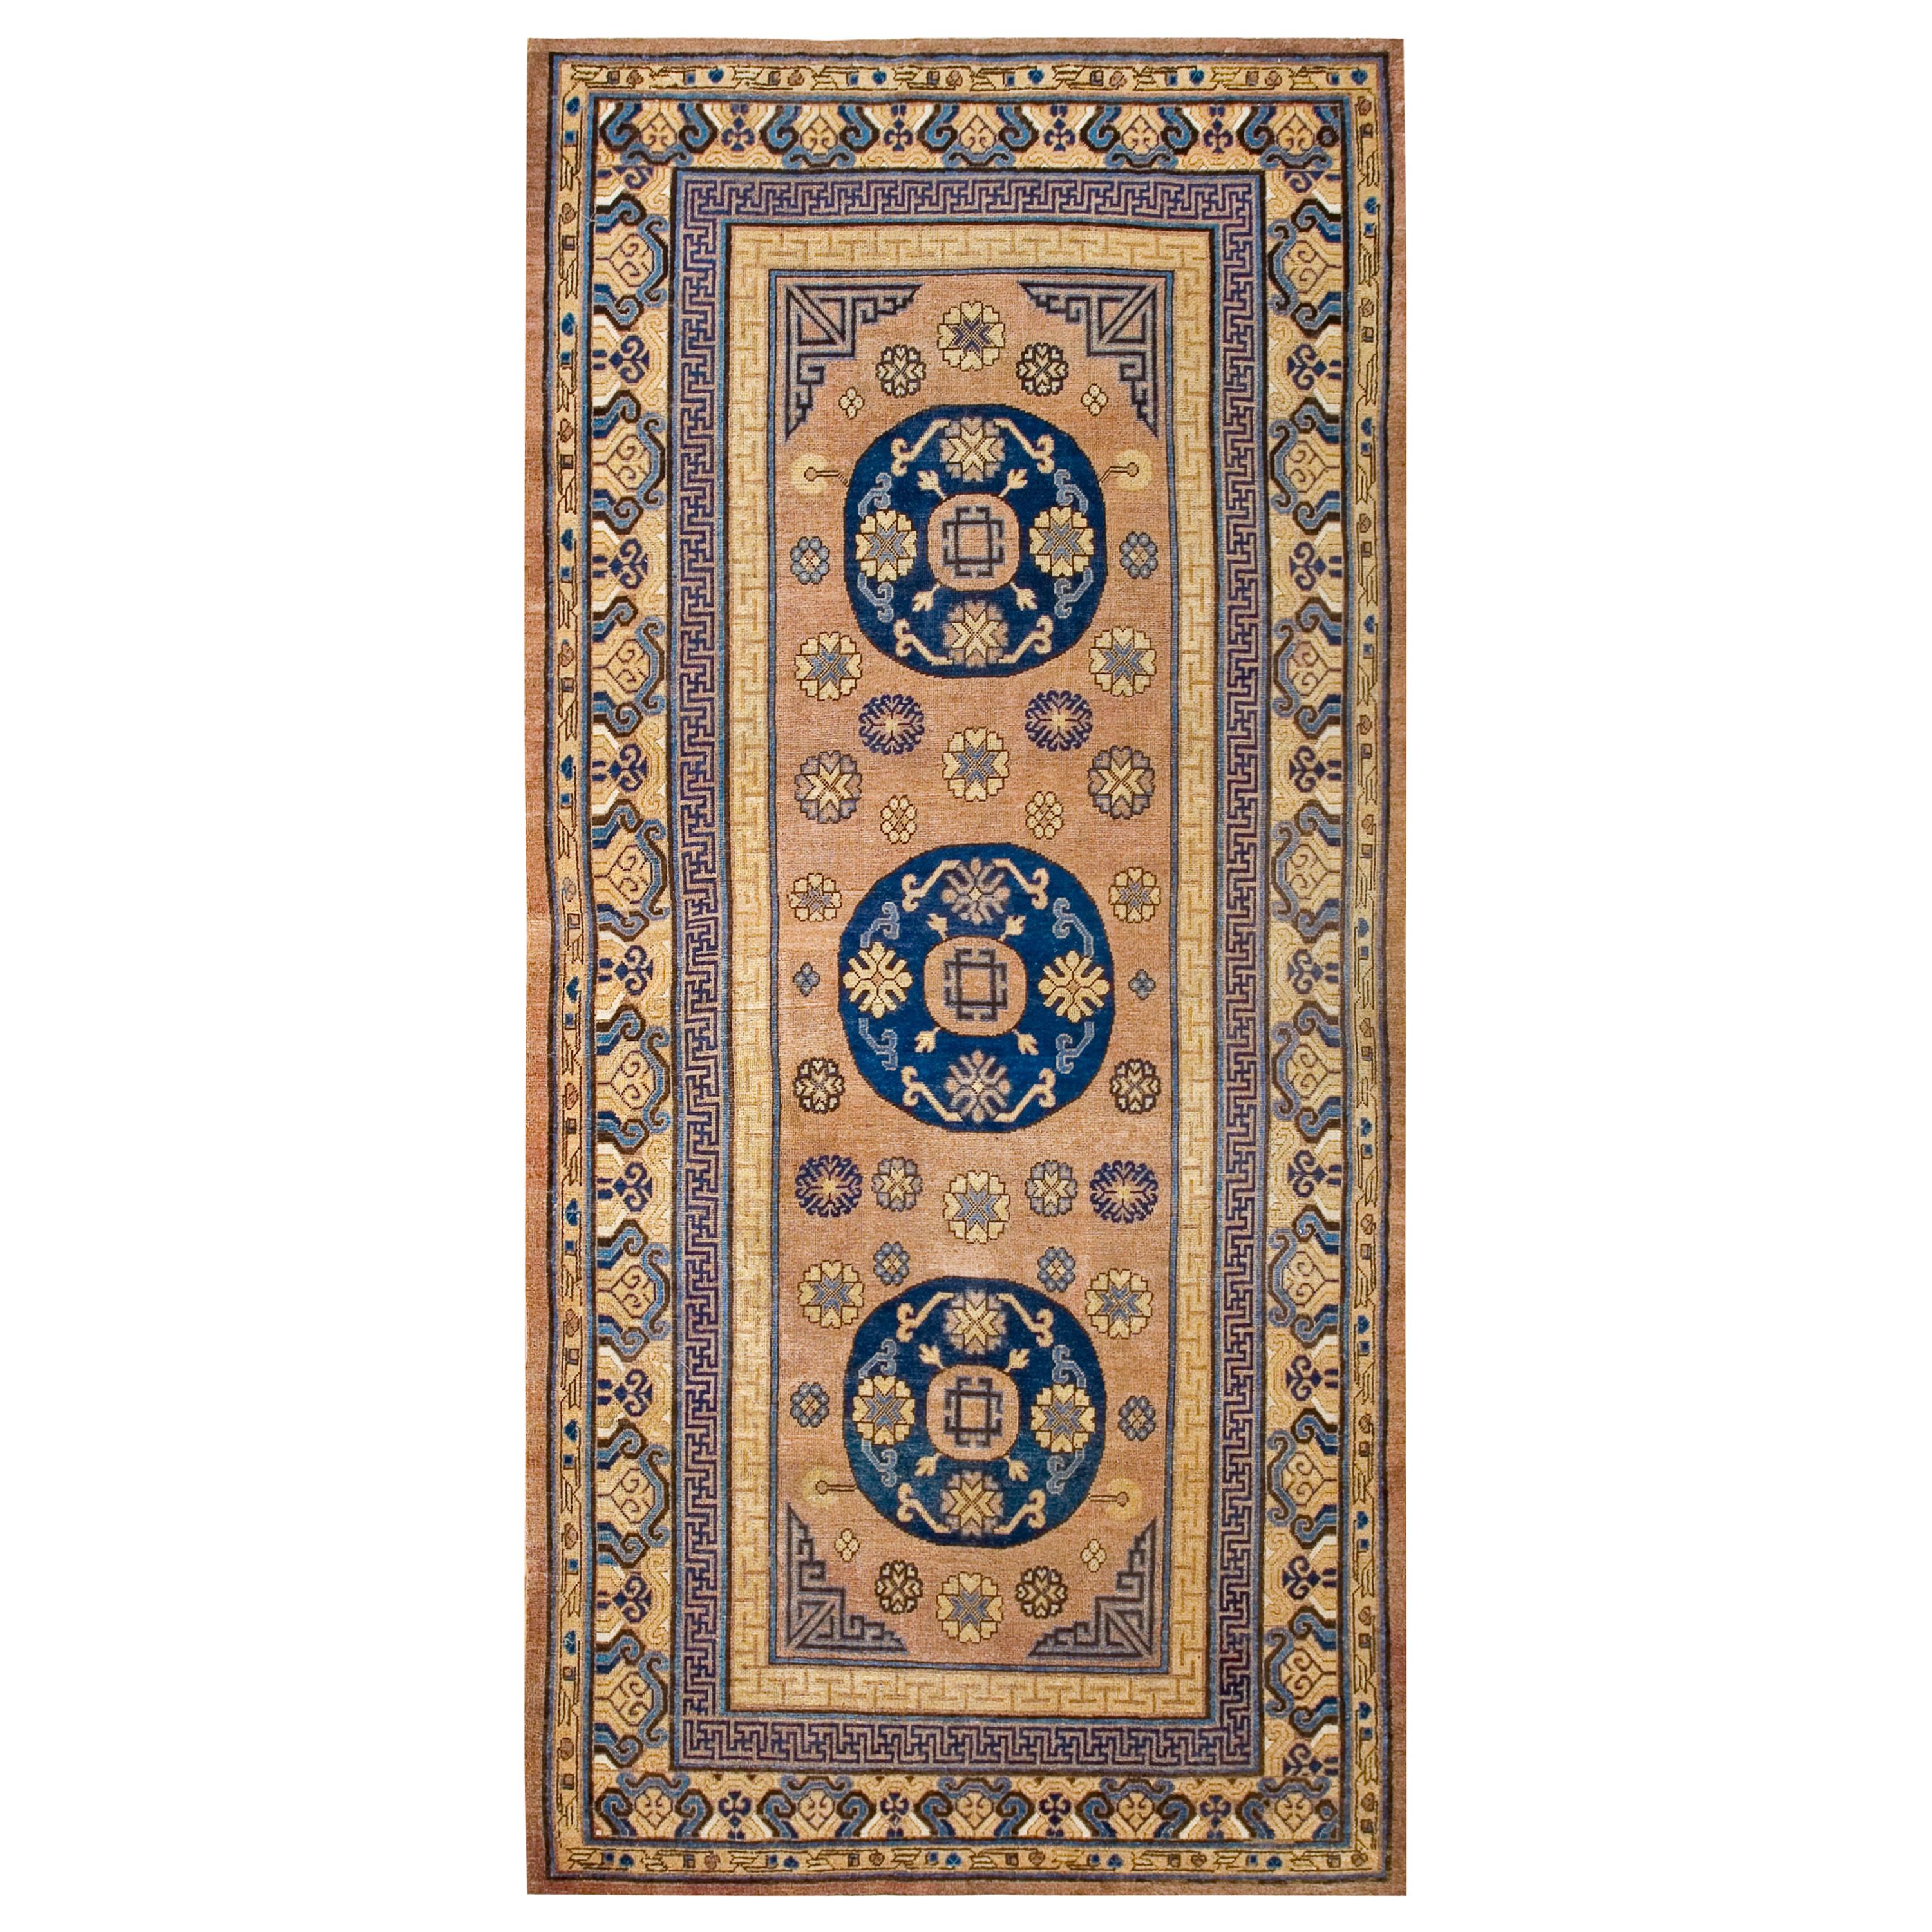 19th Century Central Asian Khotan Carpet ( 6'3" x 13'5" - 190 x 410 ) For Sale